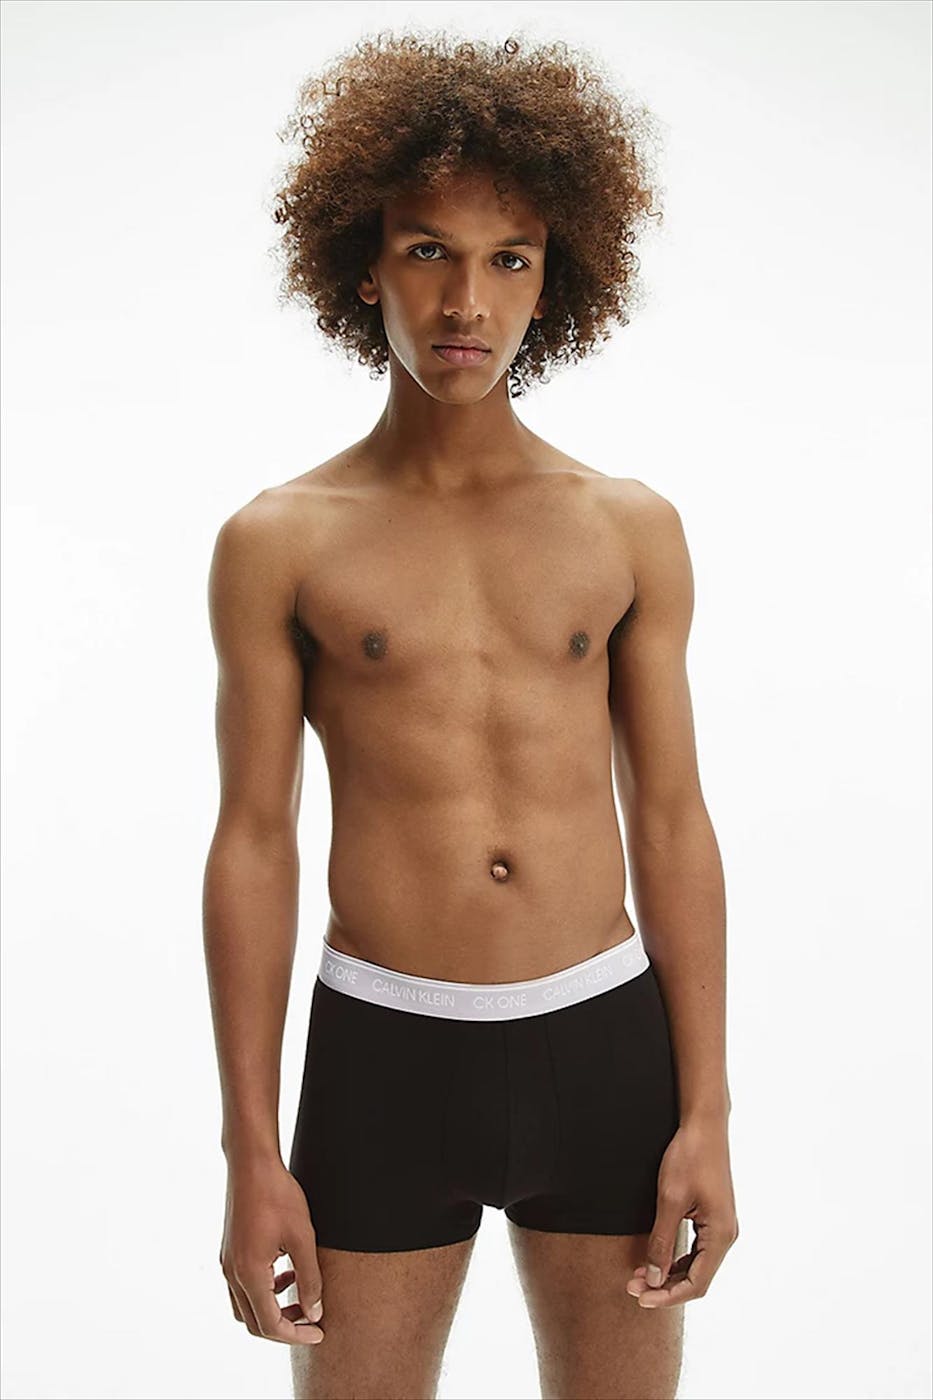 Calvin Klein Underwear - Zwarte 7-pack Ck-One boxershorts